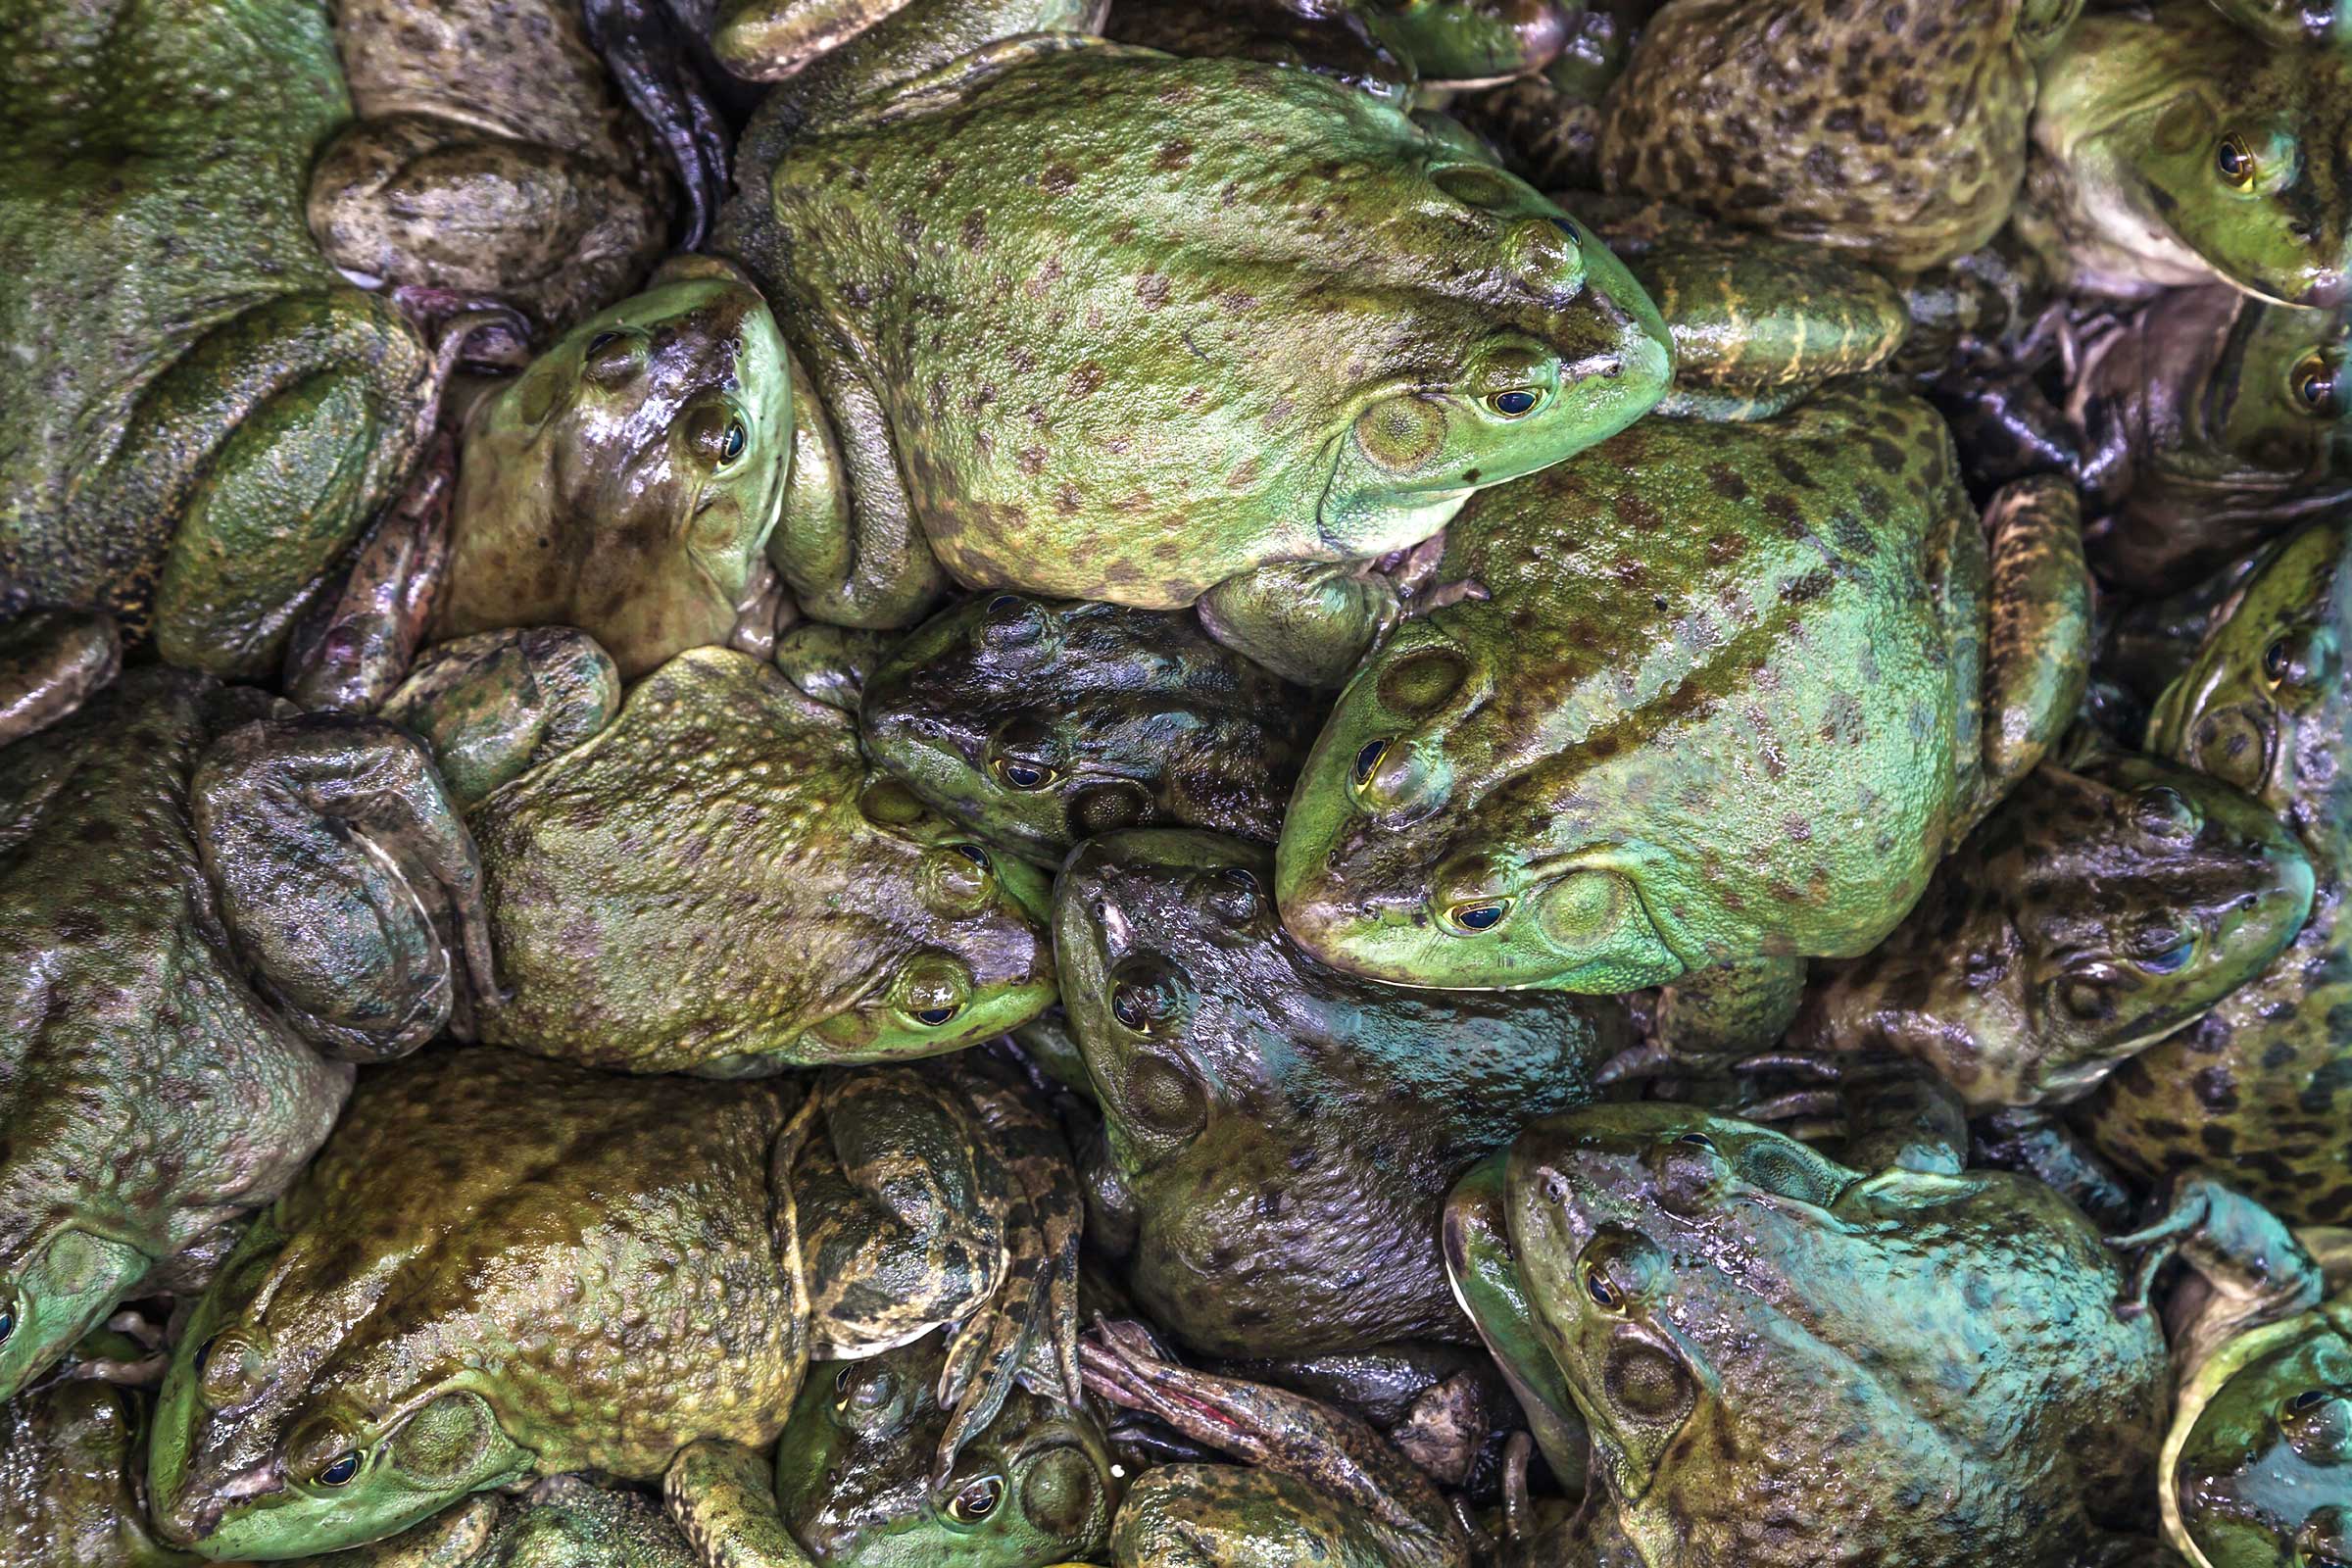   صورة| وزير الزراعة يصدر قرارا بصيد وتصدير الضفادع الحية